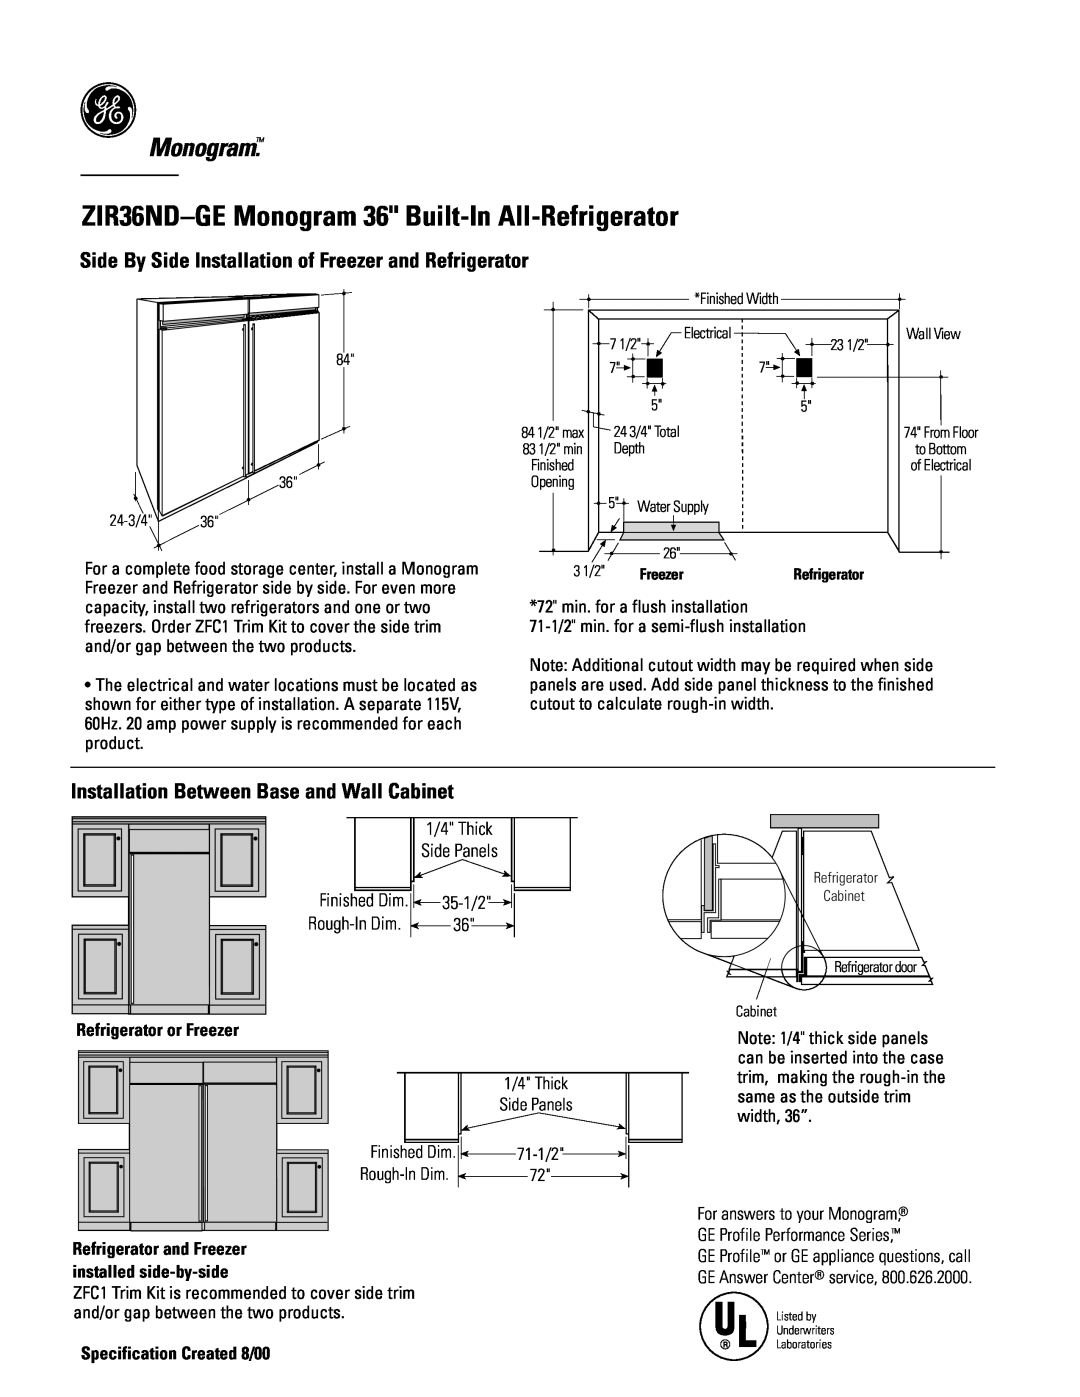 GE Monogram ZIR36NDGE ZIR36ND-GEMonogram 36 Built-In All-Refrigerator, Installation Between Base and Wall Cabinet, 35-1/2 